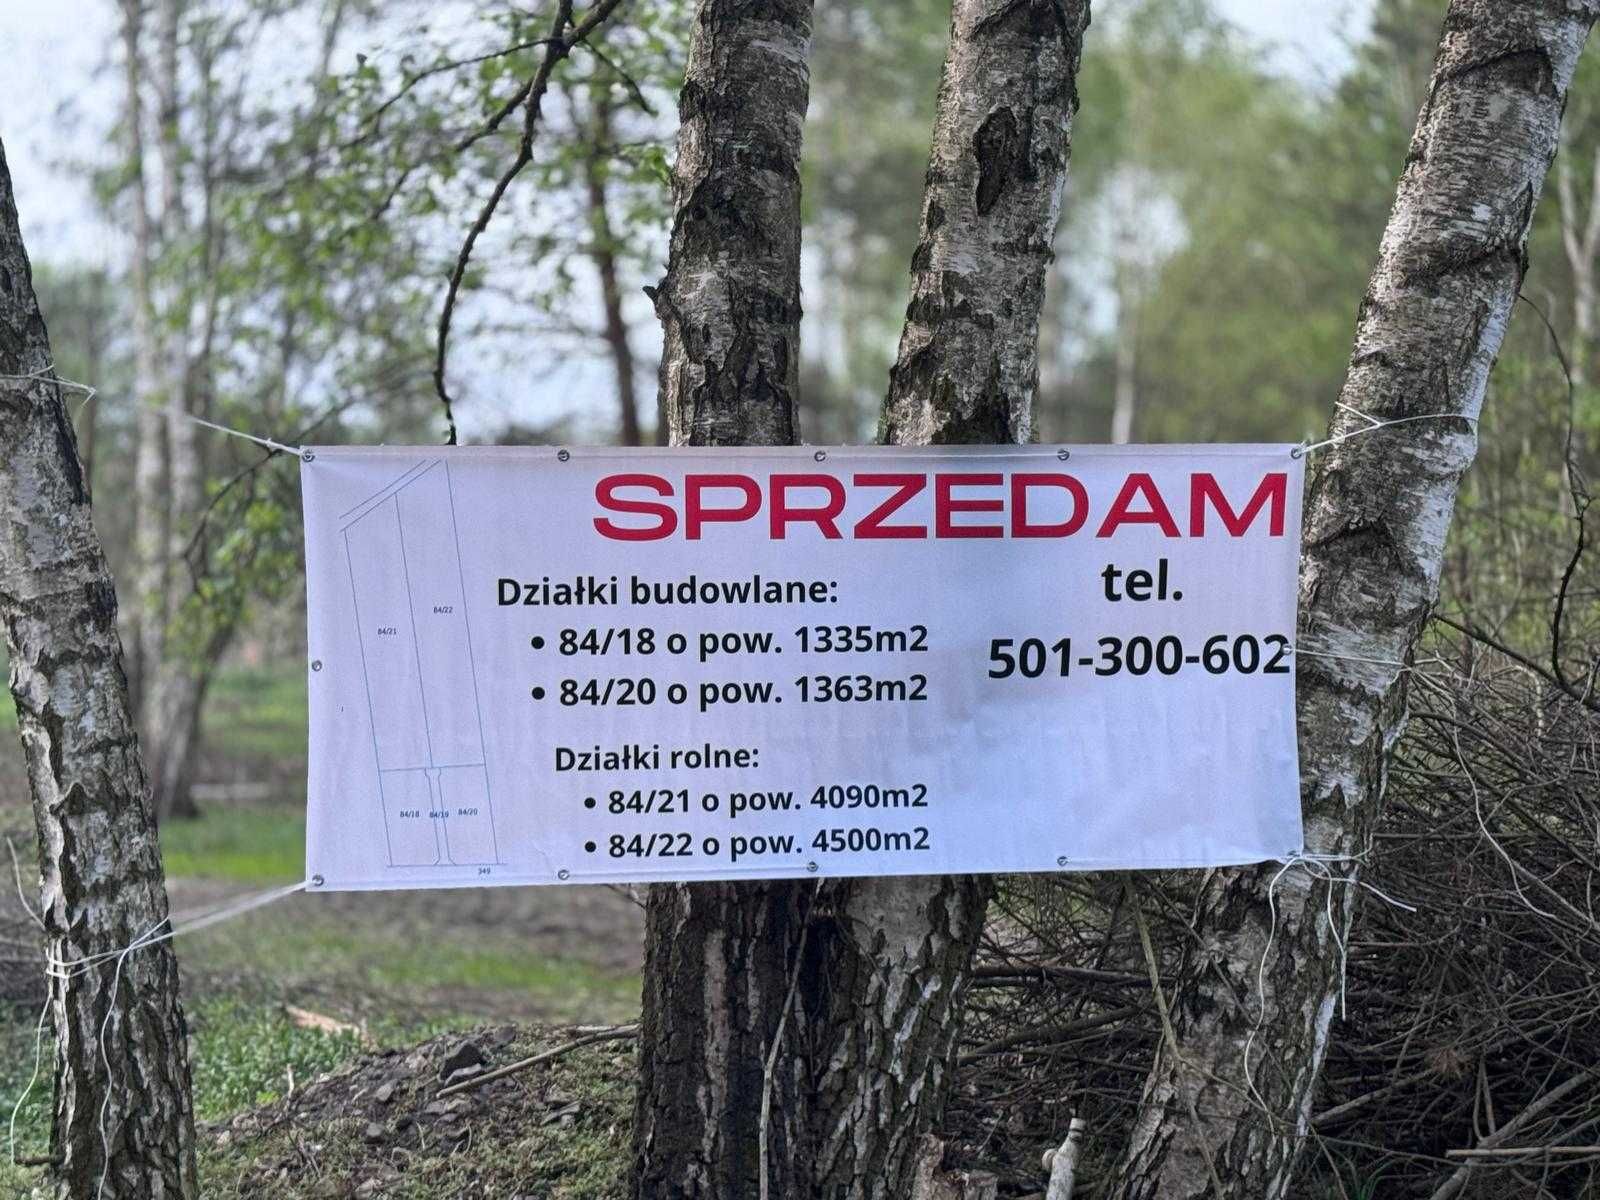 Działka/ MPZP/ prąd, woda/ droga asfaltowa/ Ozorowice/ wylot na Pęgów